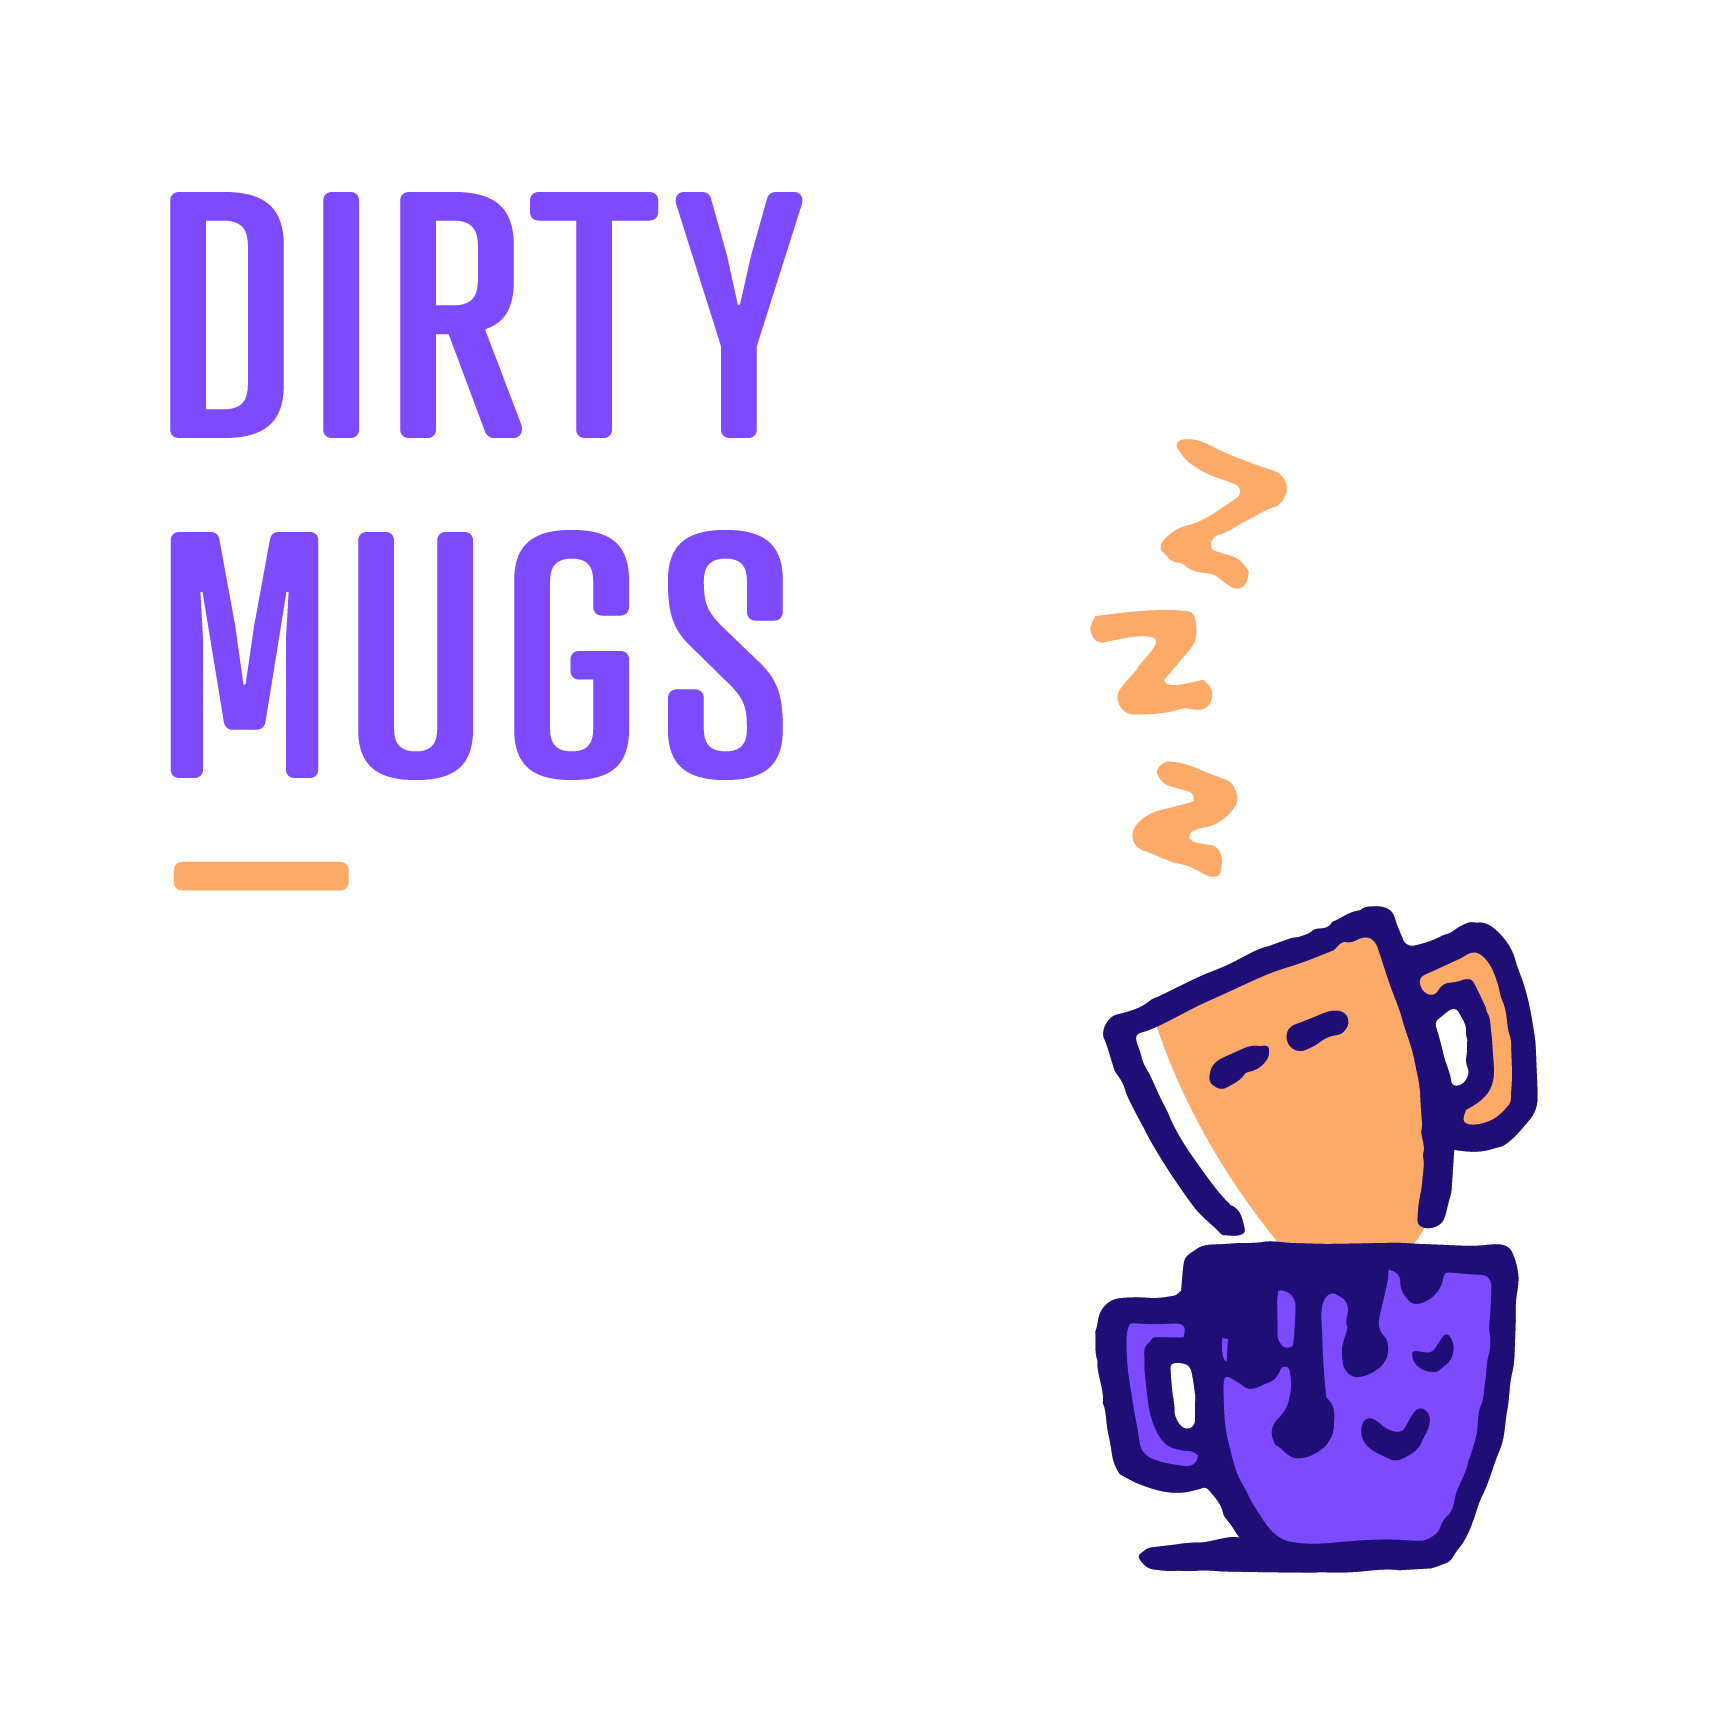 dirty mugs signage